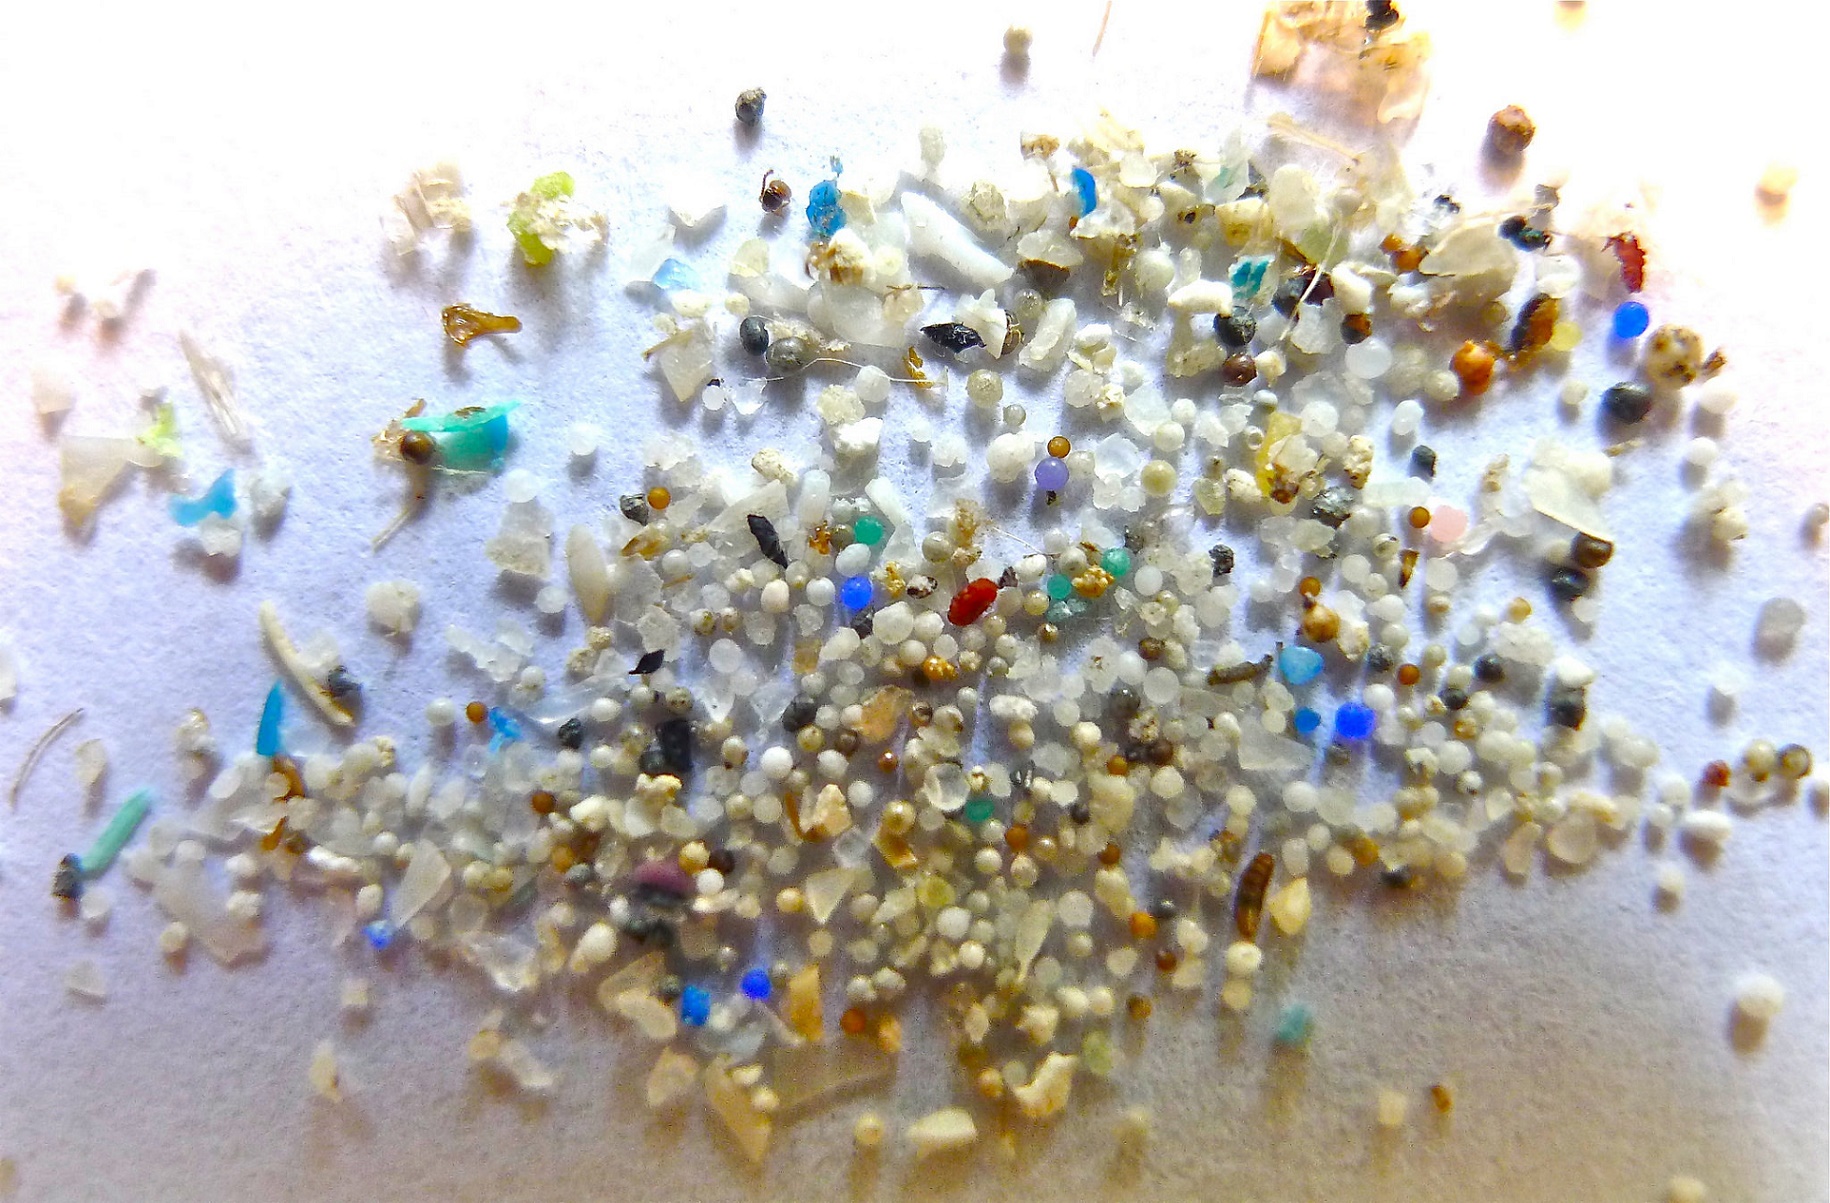 Les microsplastiques représentent un enjeu environnemental majeur. © Oregon State University, Flickr, CC BY-SA 2.0